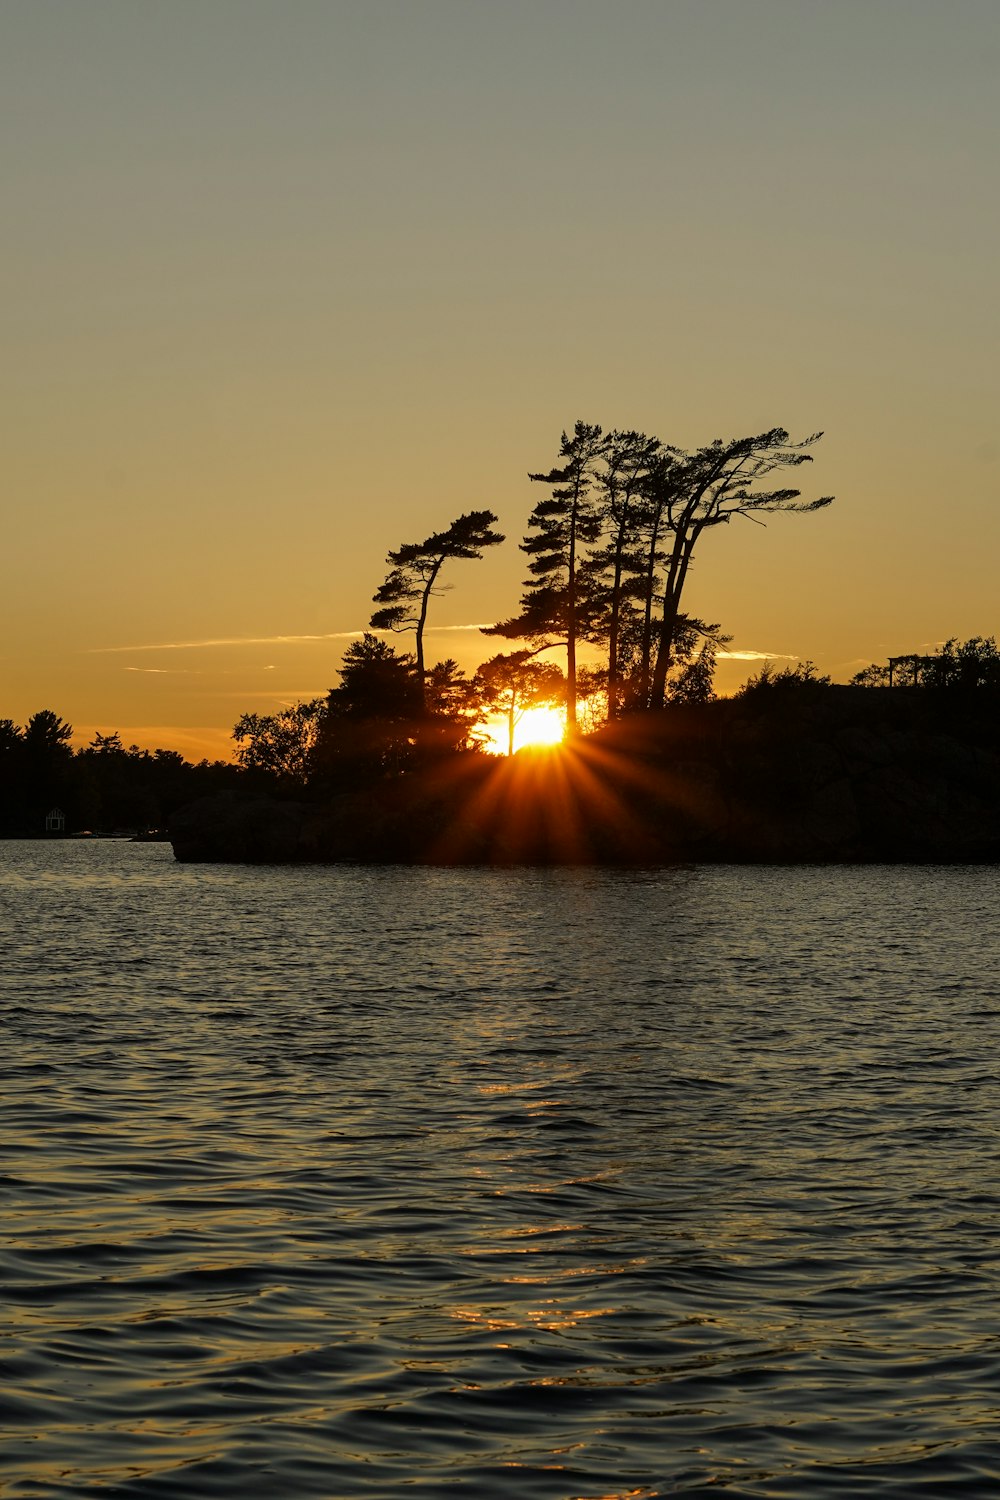 Le soleil se couche sur une petite île dans l’eau